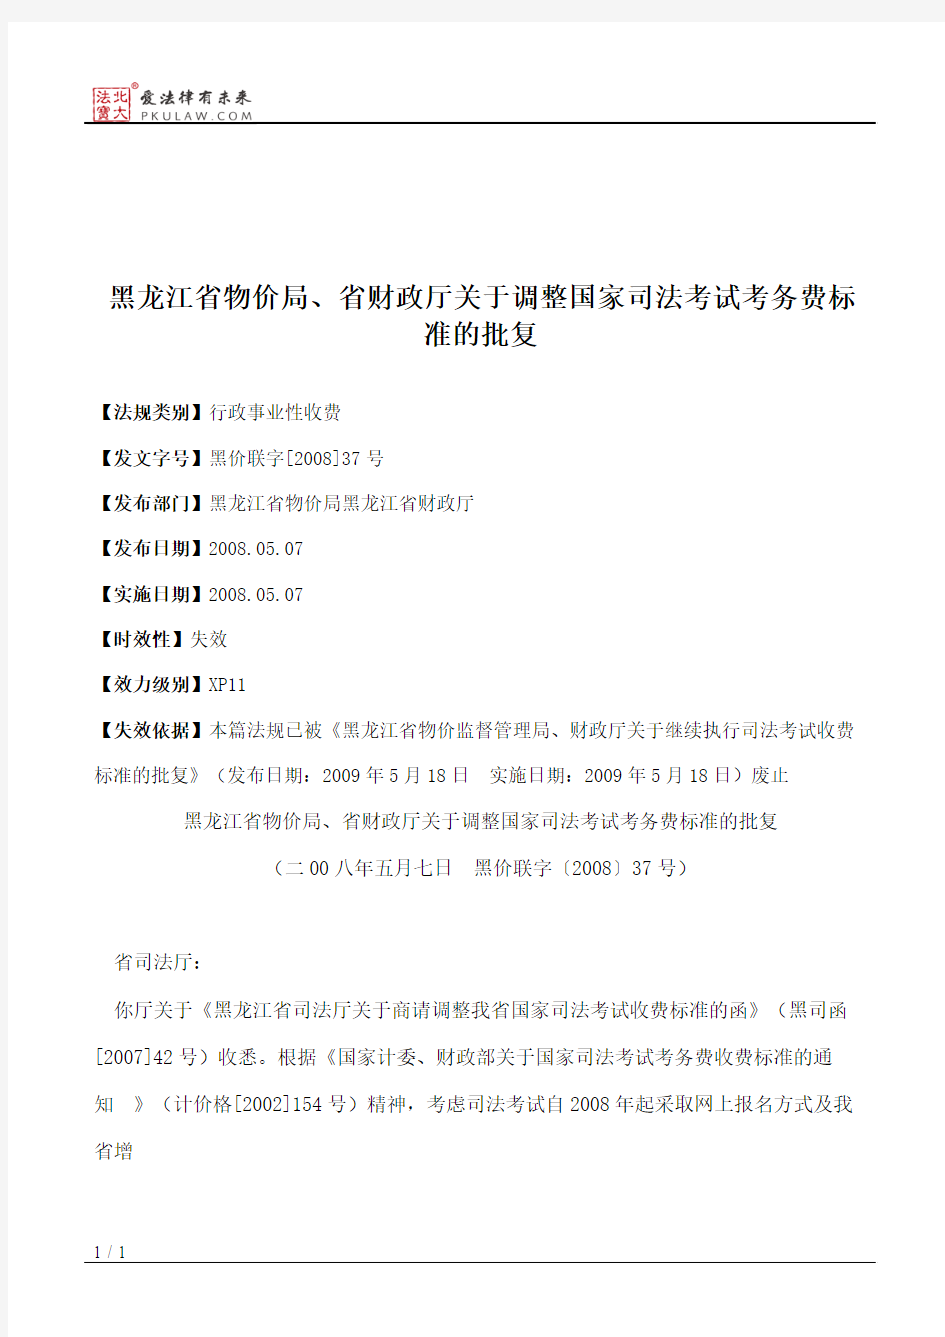 黑龙江省物价局、省财政厅关于调整国家司法考试考务费标准的批复